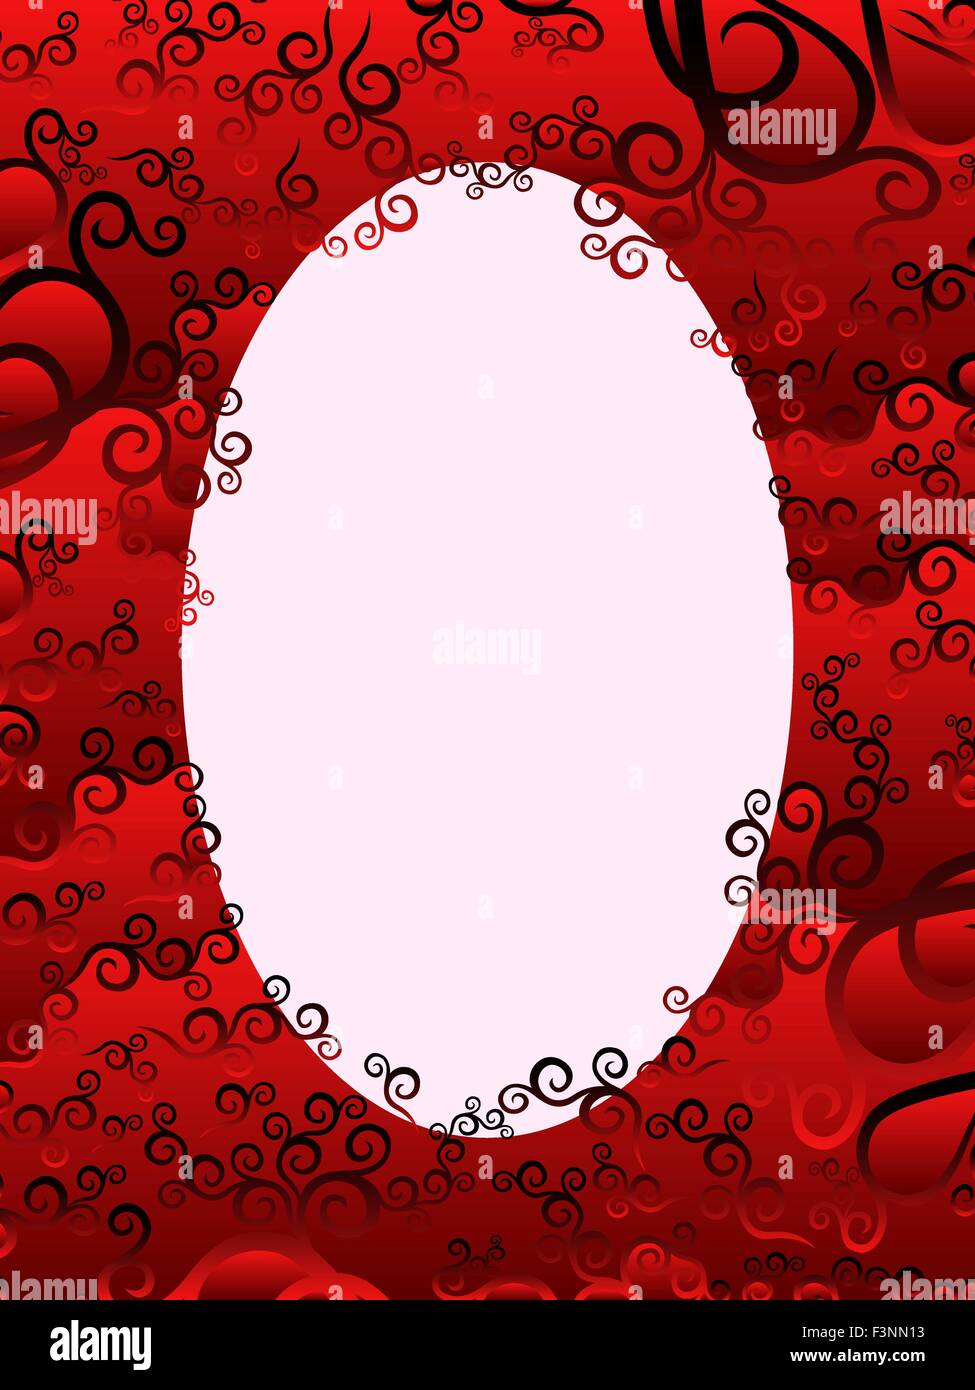 Cadre ovale verticale avec des éléments floraux dans des teintes rouge, dessin à la main les images vectorielles Illustration de Vecteur